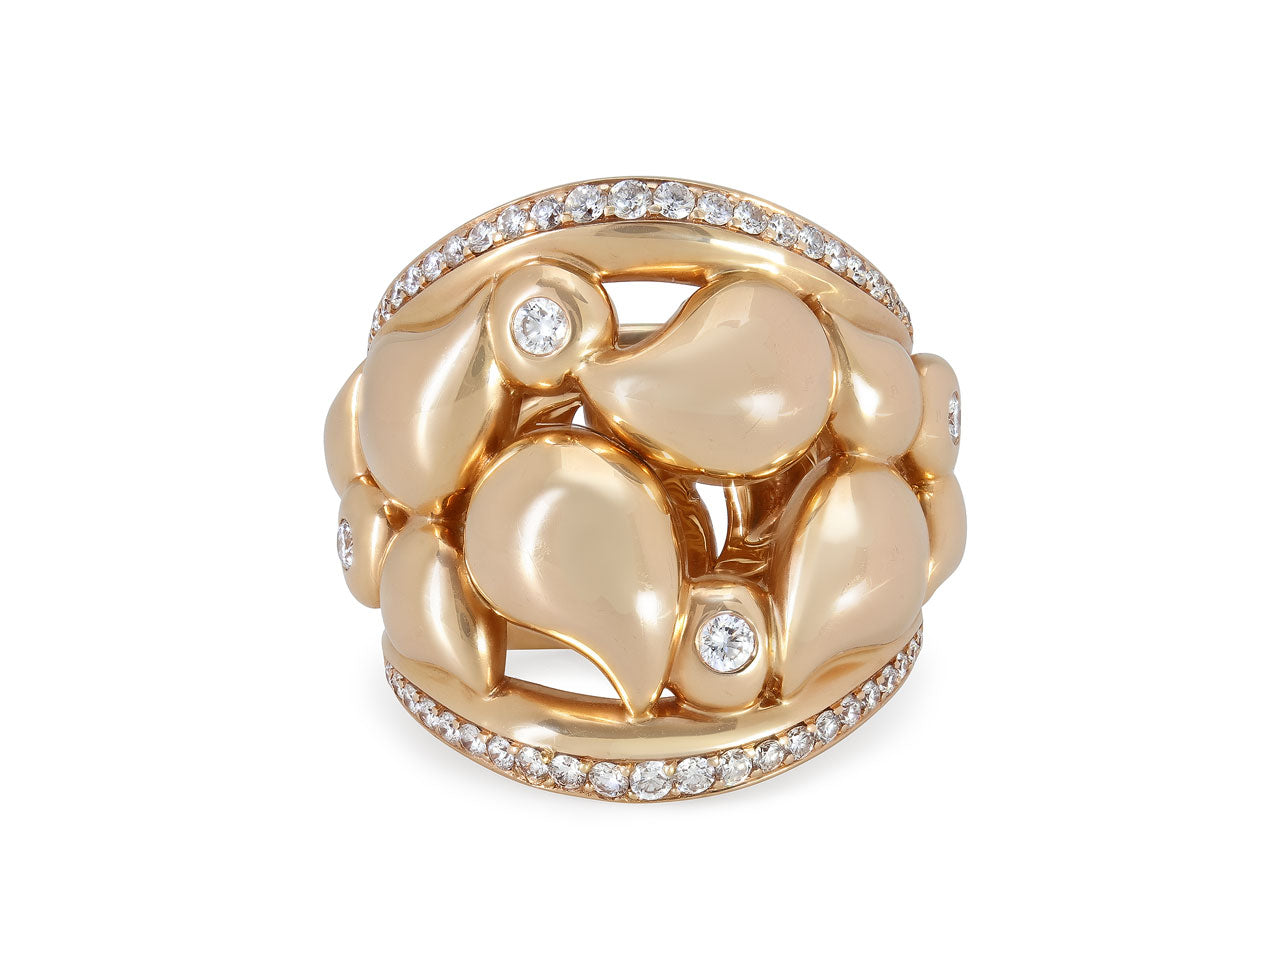 Tamara Comolli 'Signature Lace' Diamond Ring in 18K Rose Gold